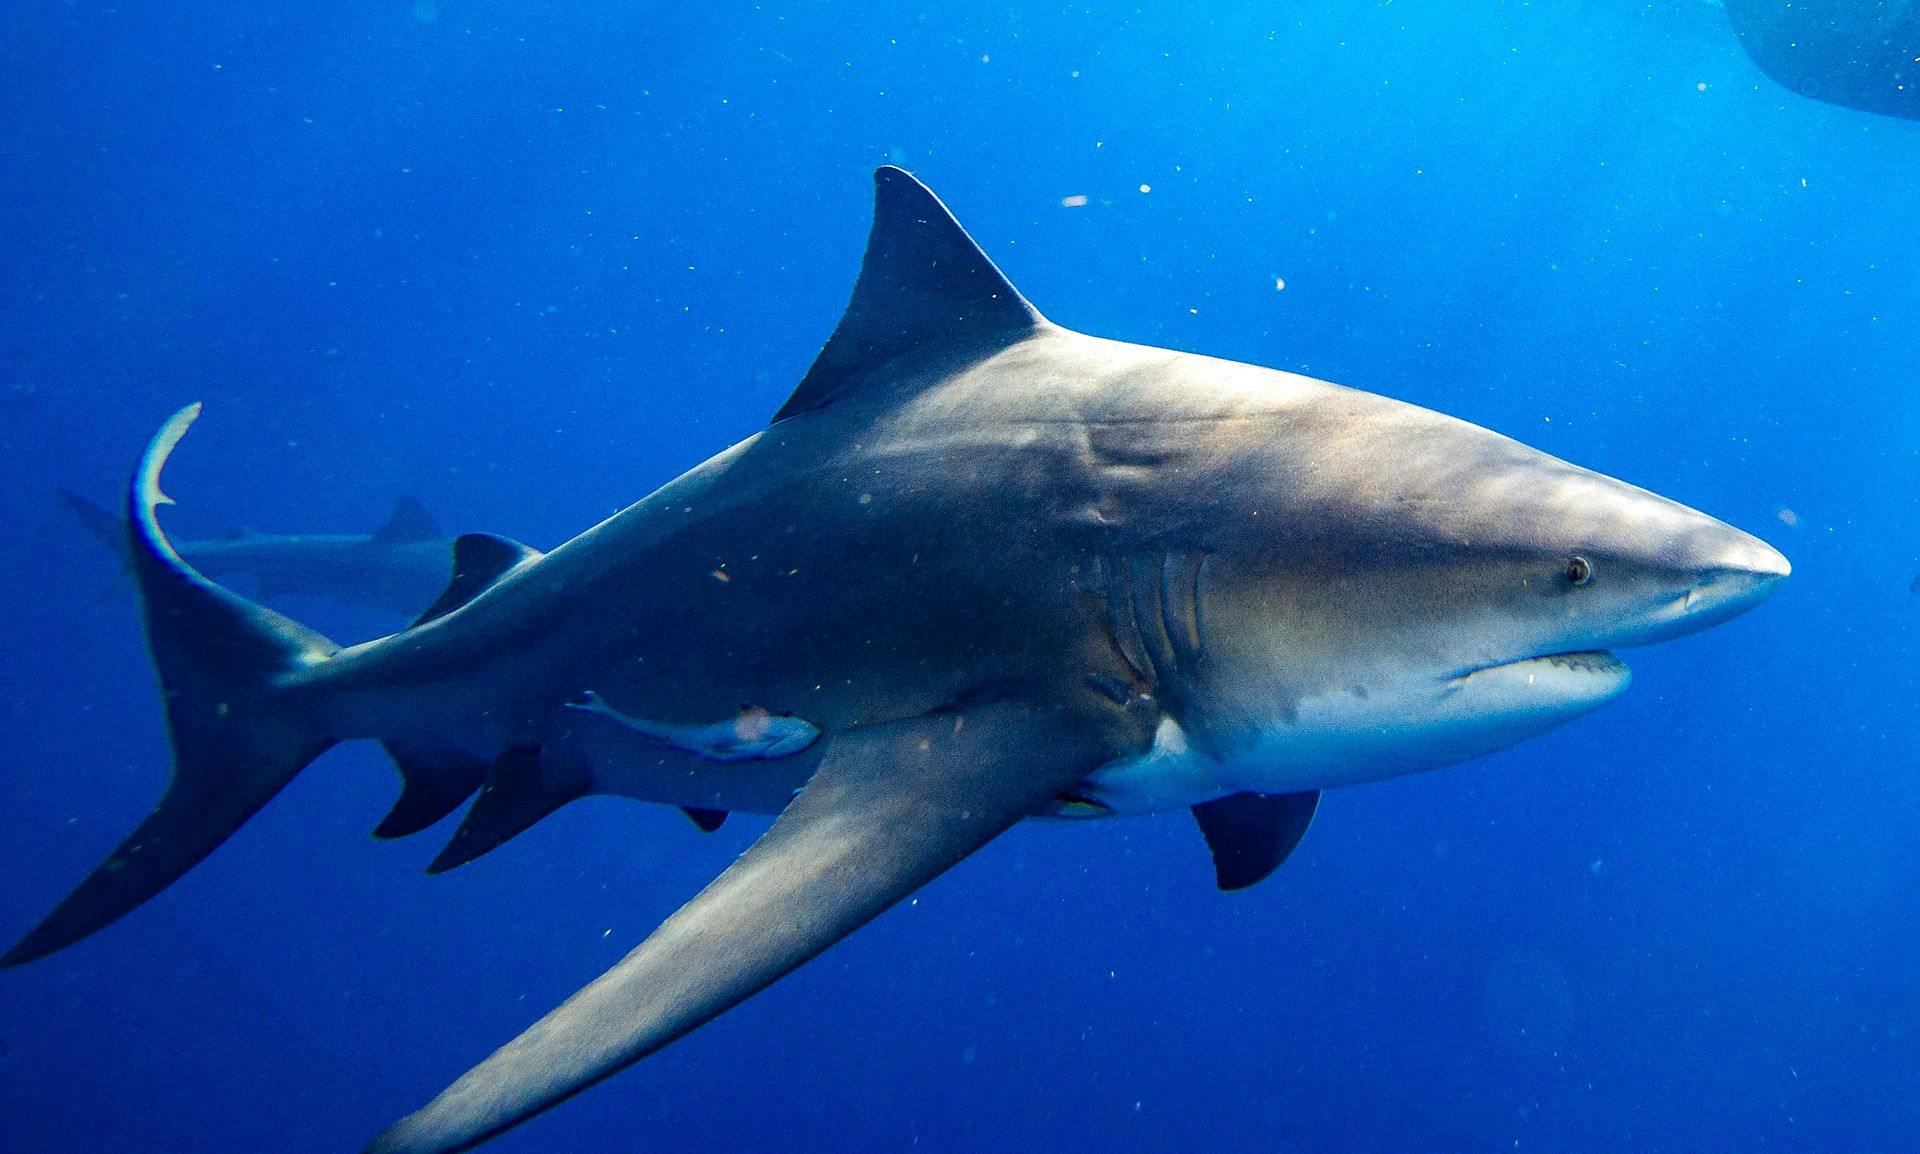 Tyrehajen regnes som en af de mest farlige hajer. Den stod også bag drabet på en 58-årig kvinde i tirsdags.&nbsp;
